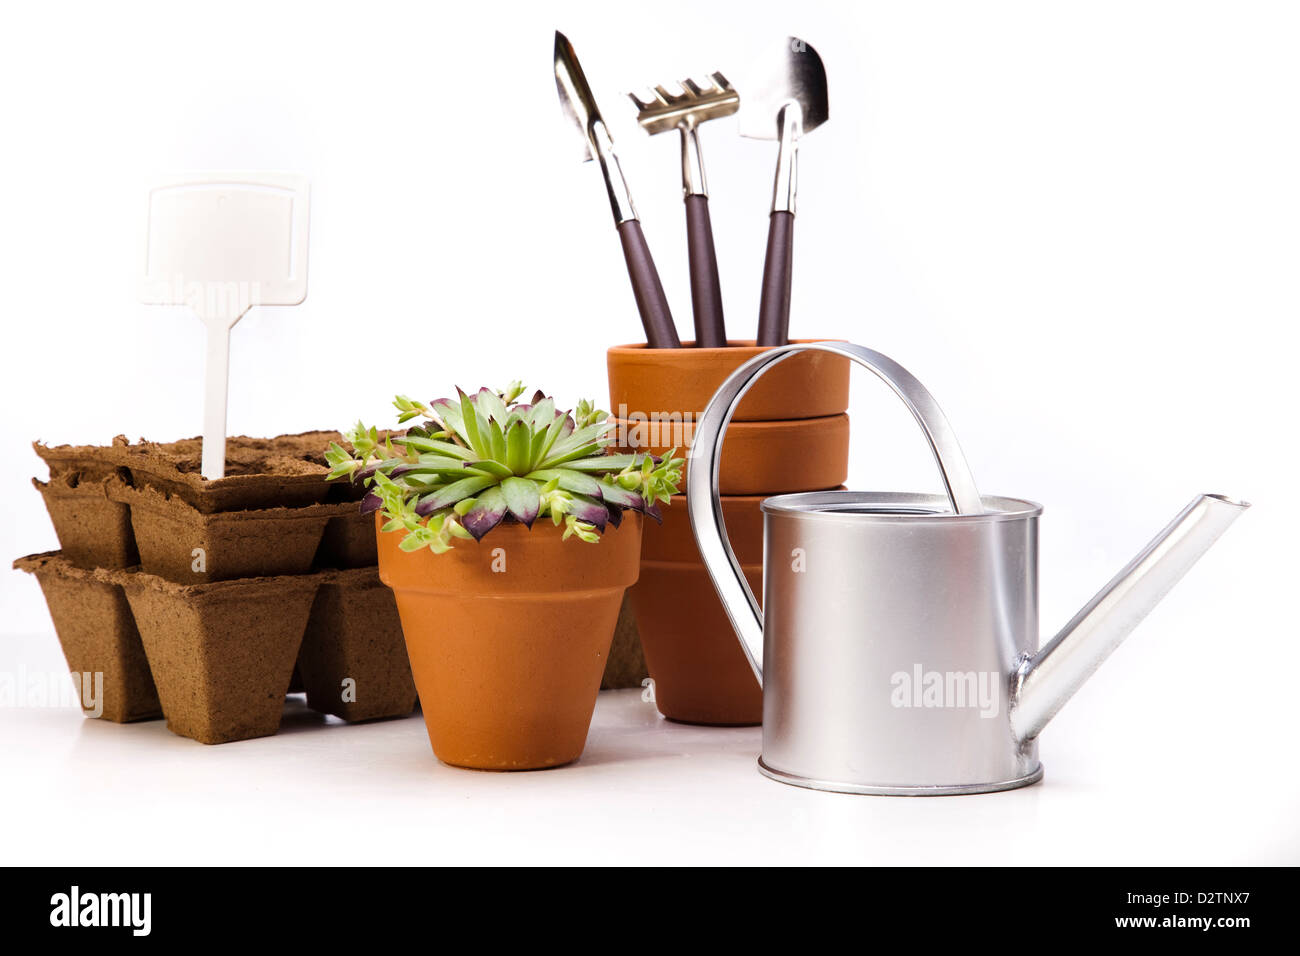 Arrosoir, de plantes et d'outils de jardinage Banque D'Images